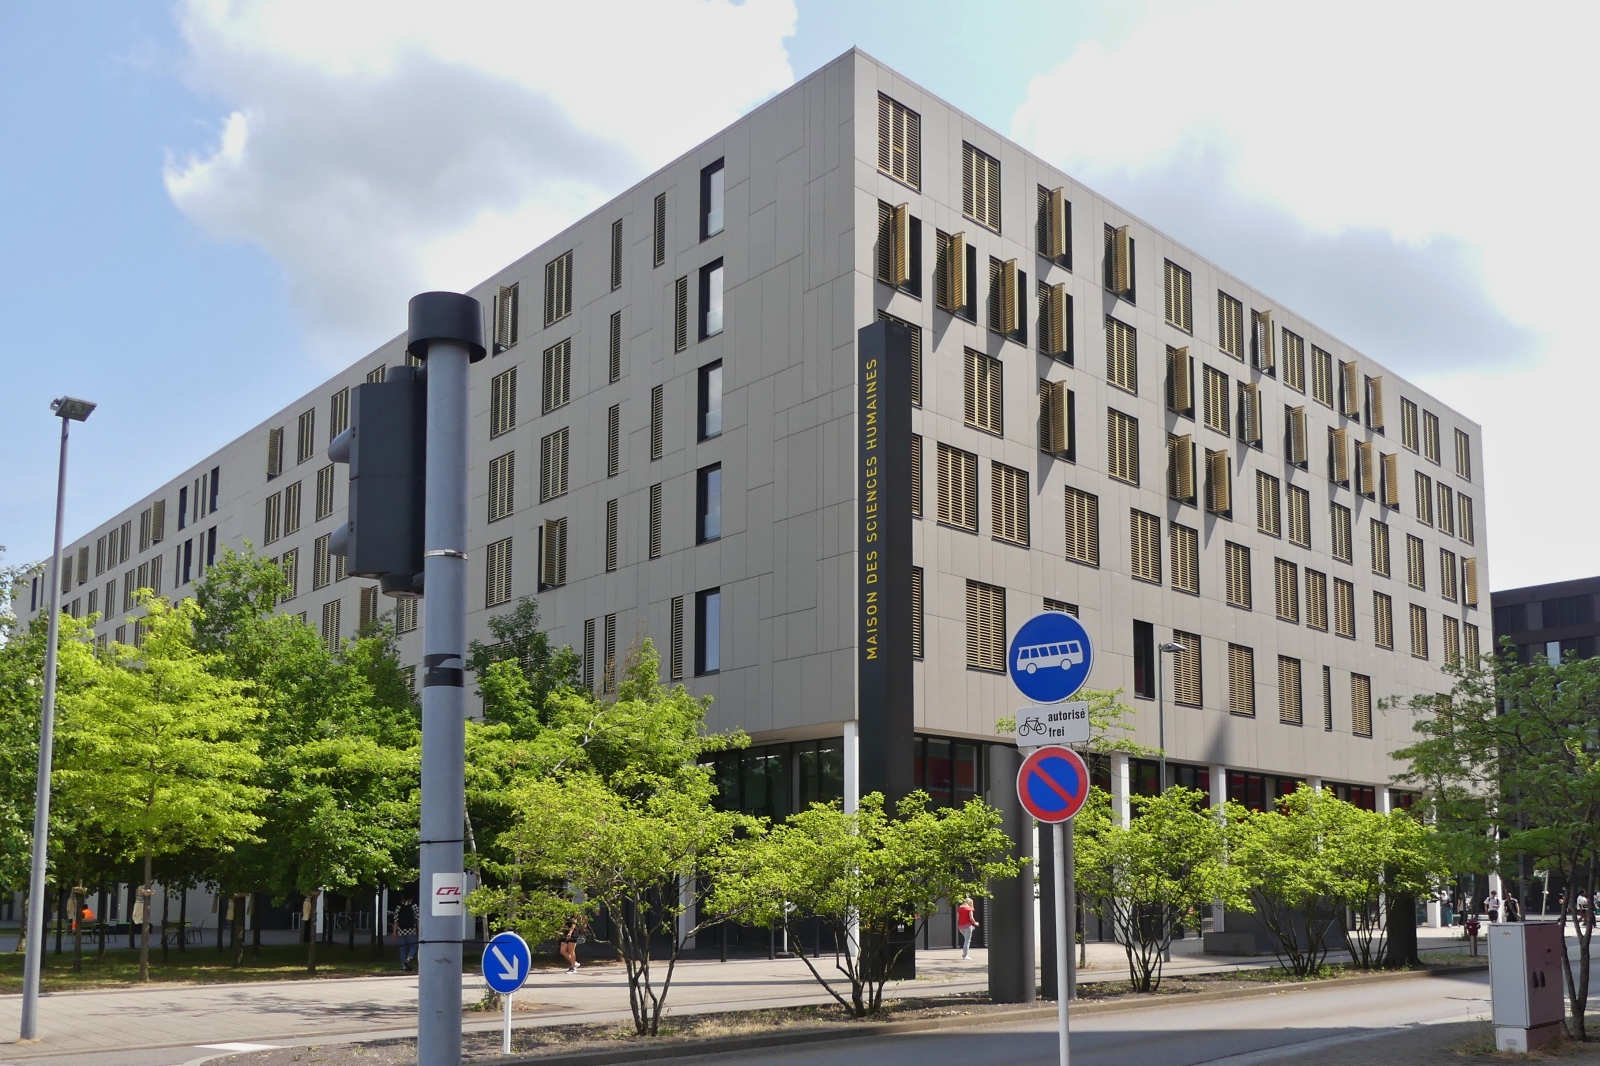 Maison des Sciences Humaines, Haus der Humanwissenschaften),
gehrt zur Uni Luxemburg auf dem Campus Belval in Esch Alzette. 10.07.2023
